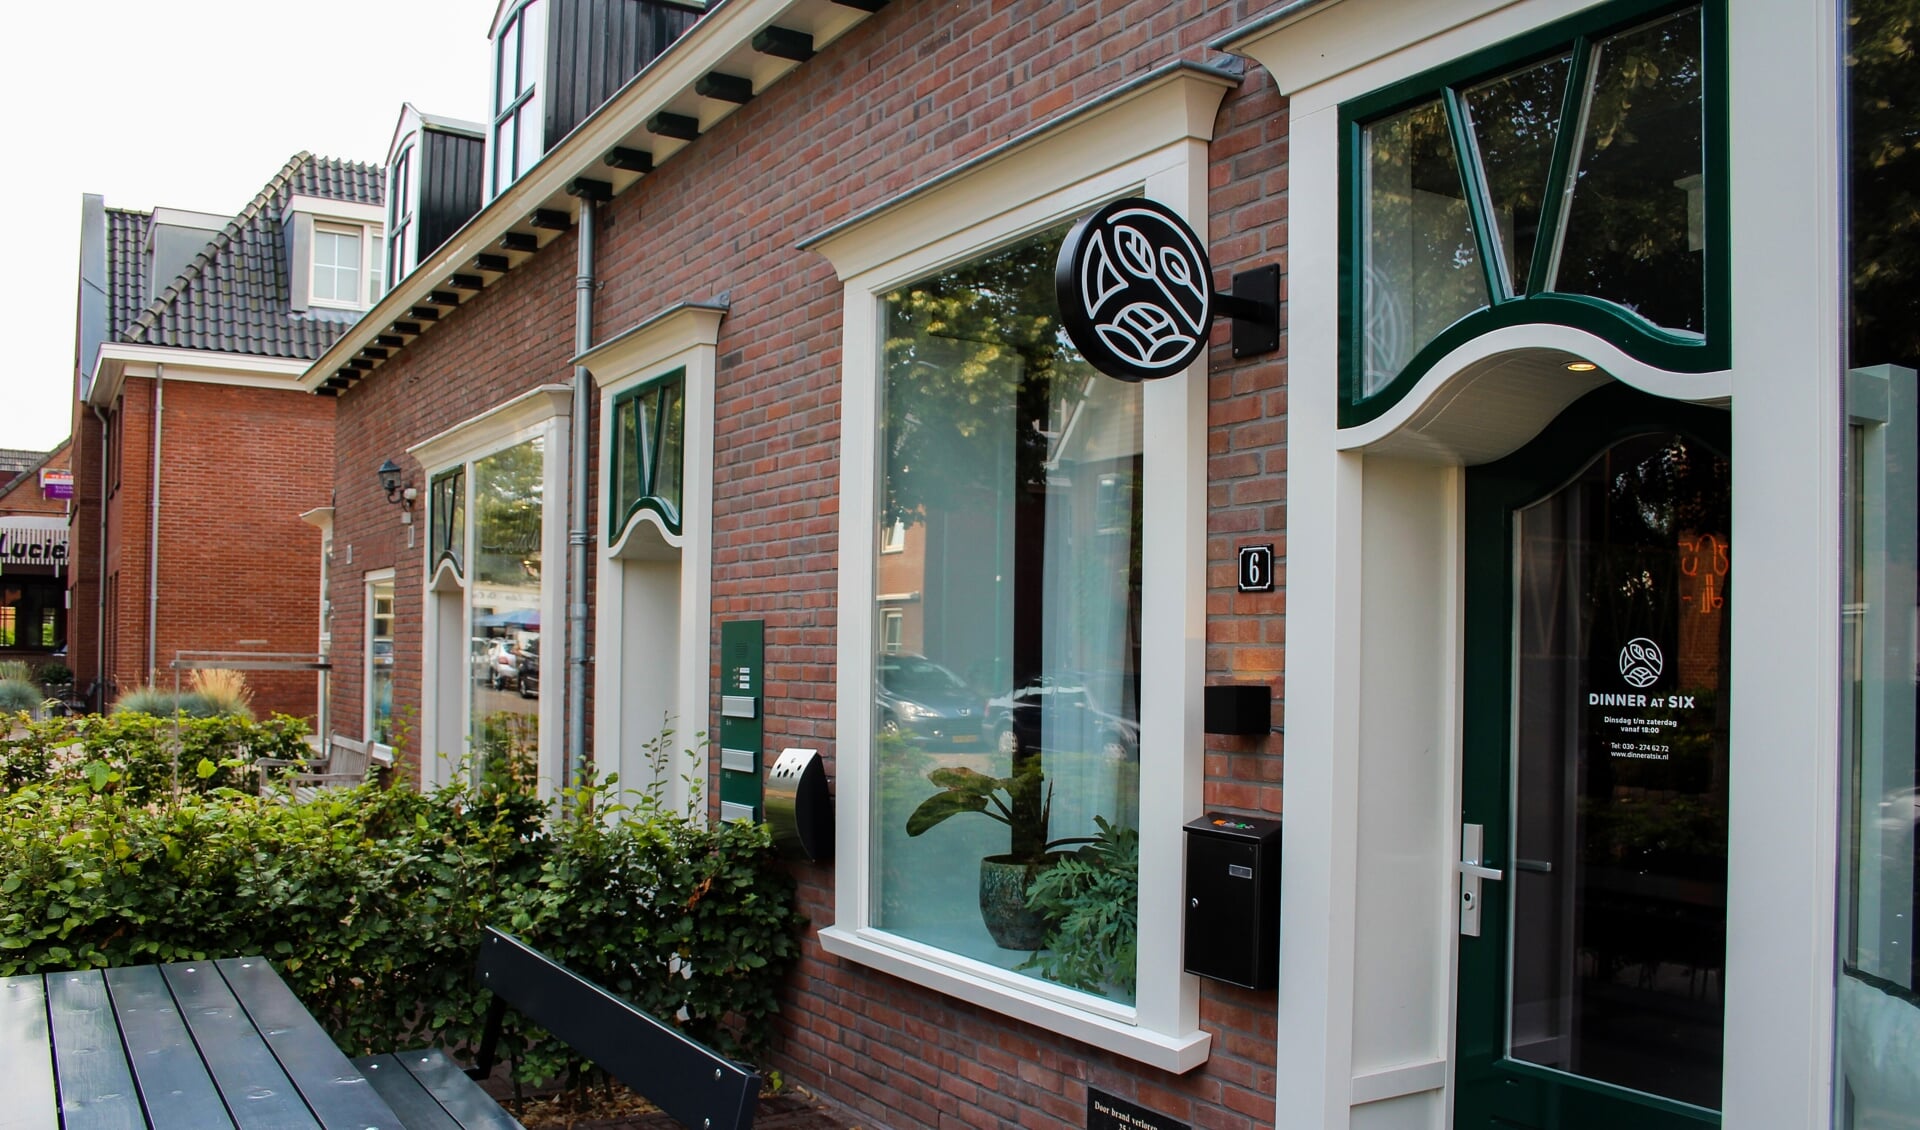 Restaurant Dinner at Six op de voormalige plek van snackbar De Roskam aan de Herenweg 6.